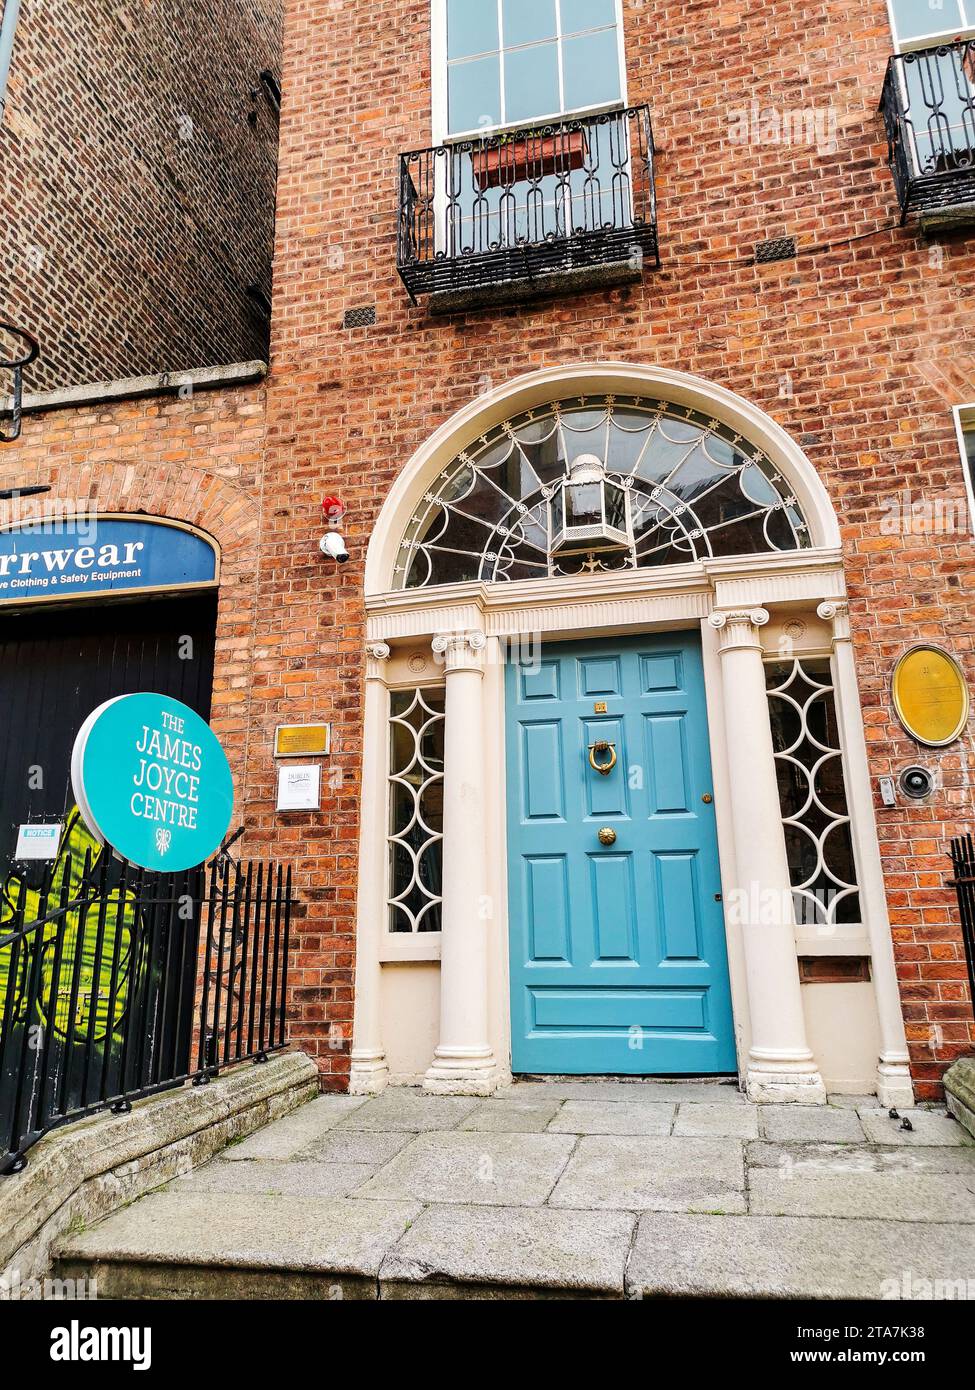 Frente al James Joyce Centre, museo dedicado al famoso escritor irlandés, en casa georgiana en North Great George's Street, Dublín, Irlanda Foto de stock